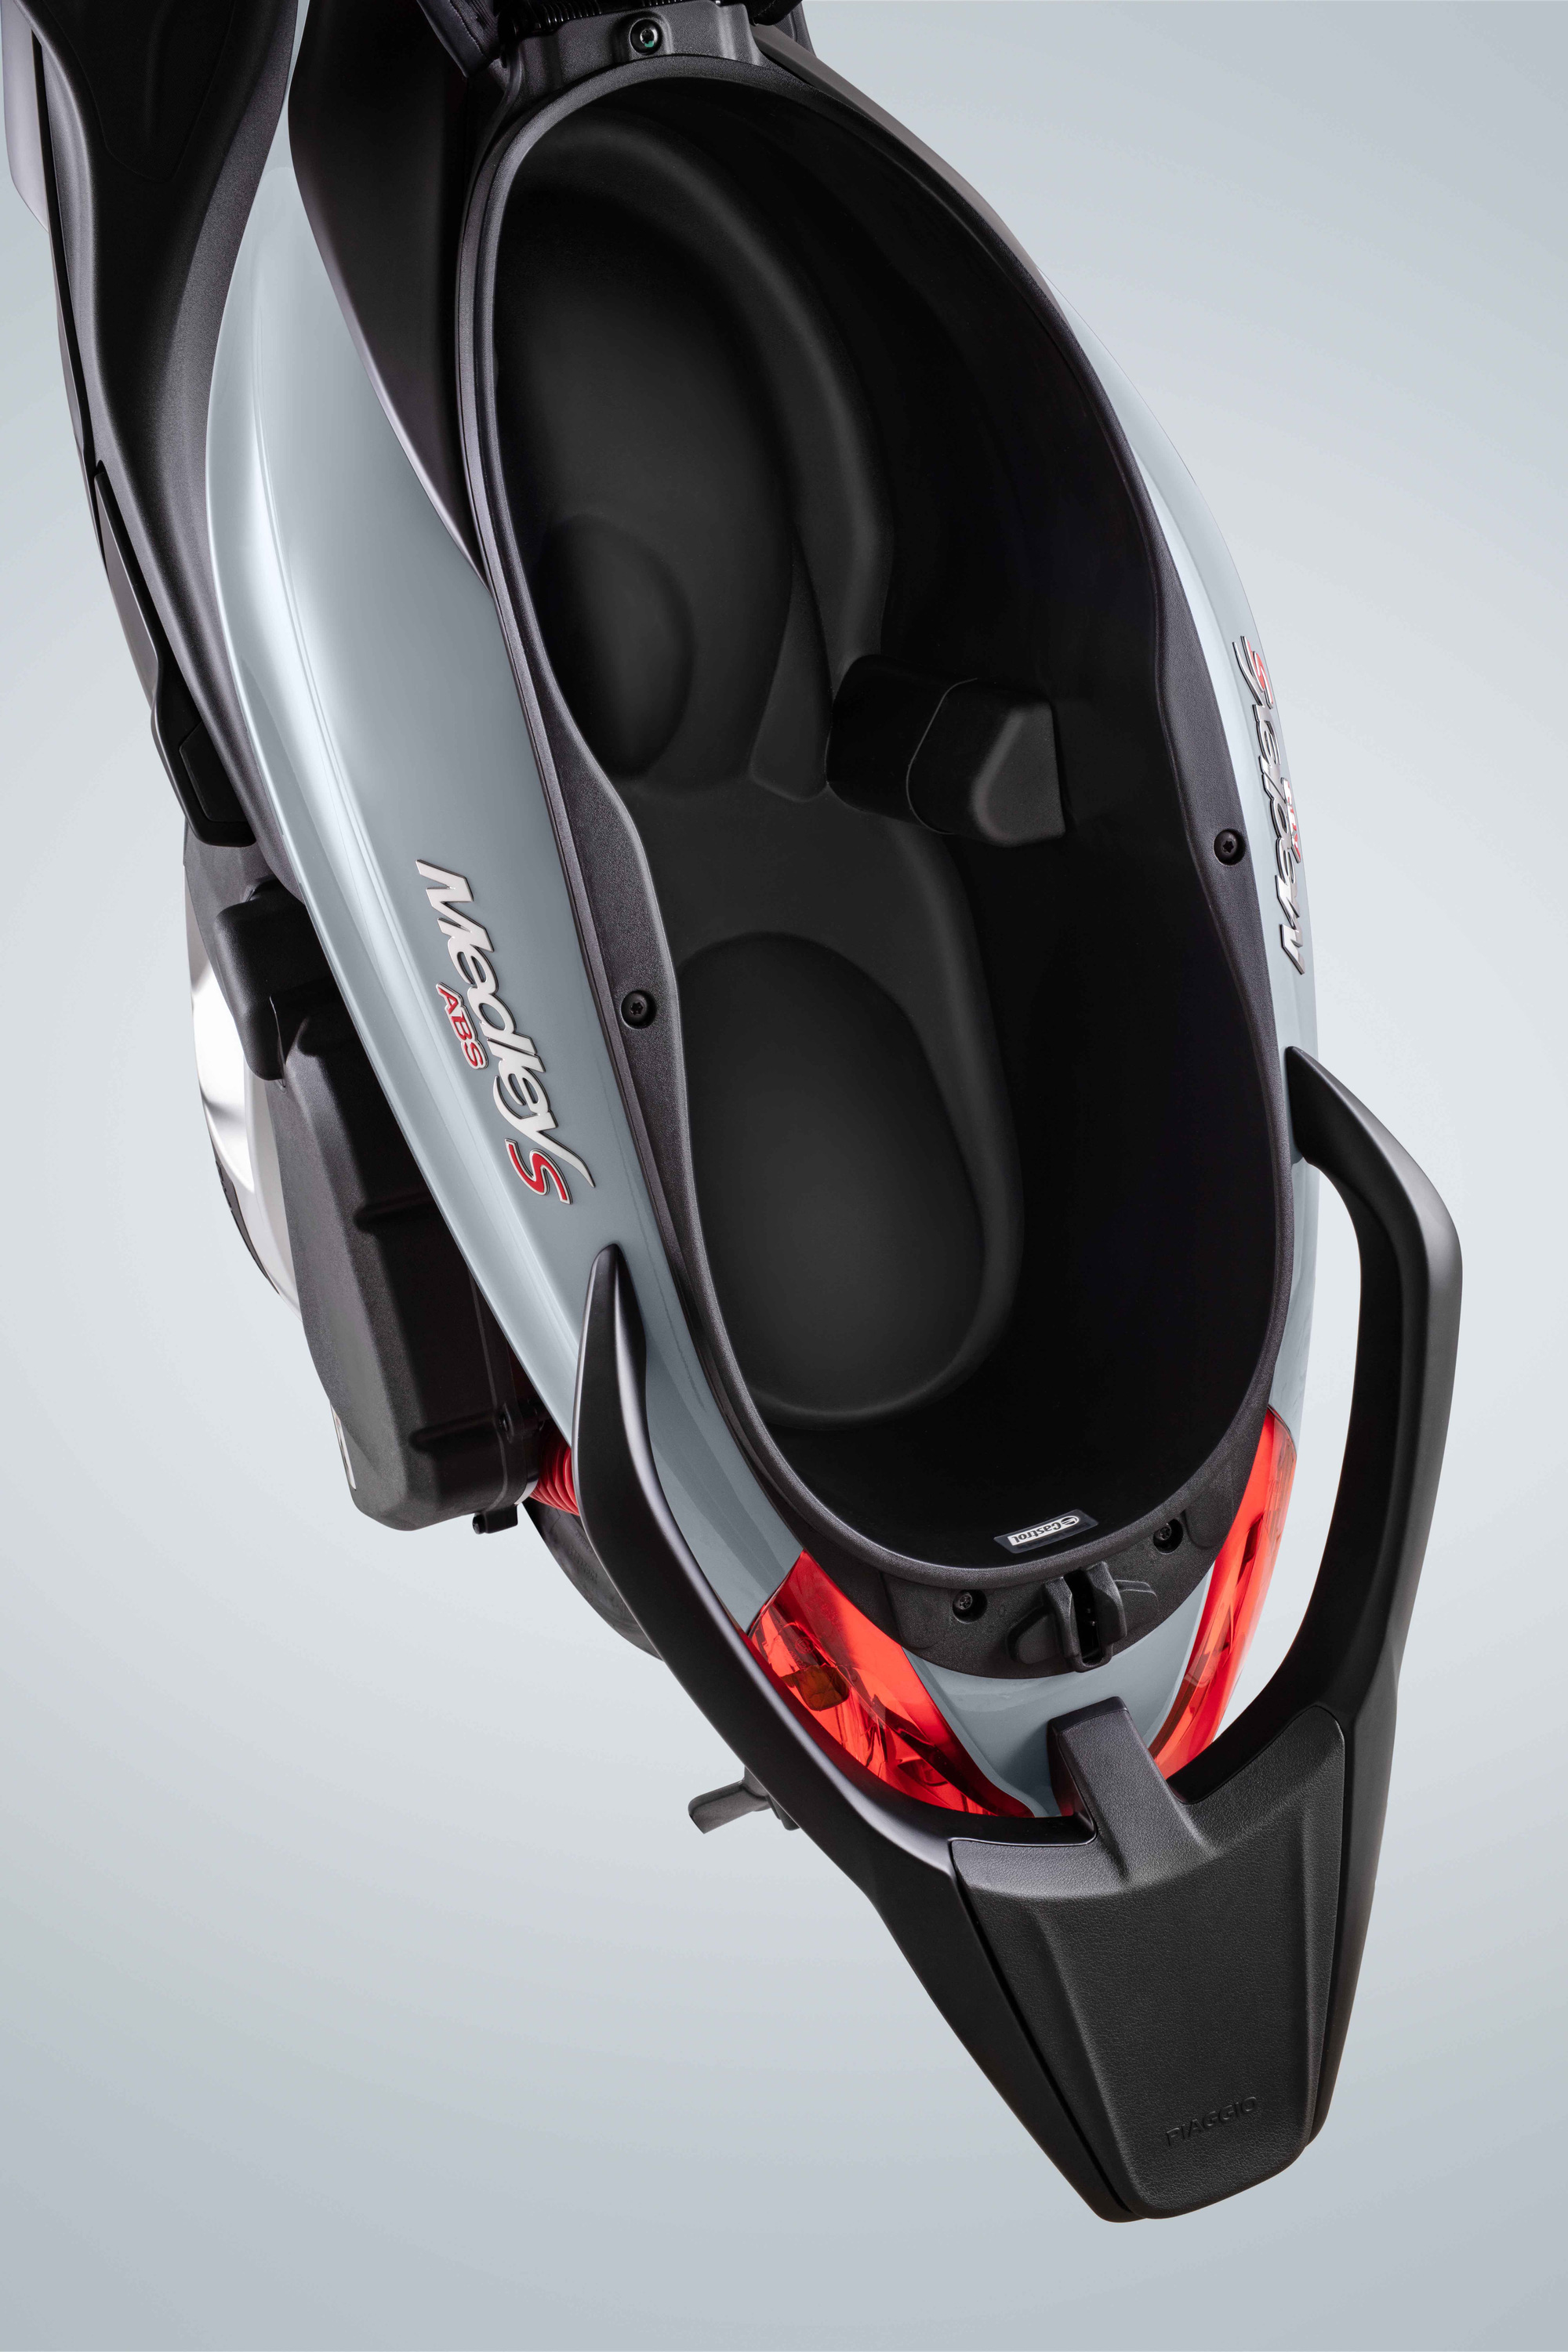 Ra mắt Piaggio Medley 2020 - Đấu Honda SH bằng giá bán từ 75 triệu đồng - Ảnh 6.